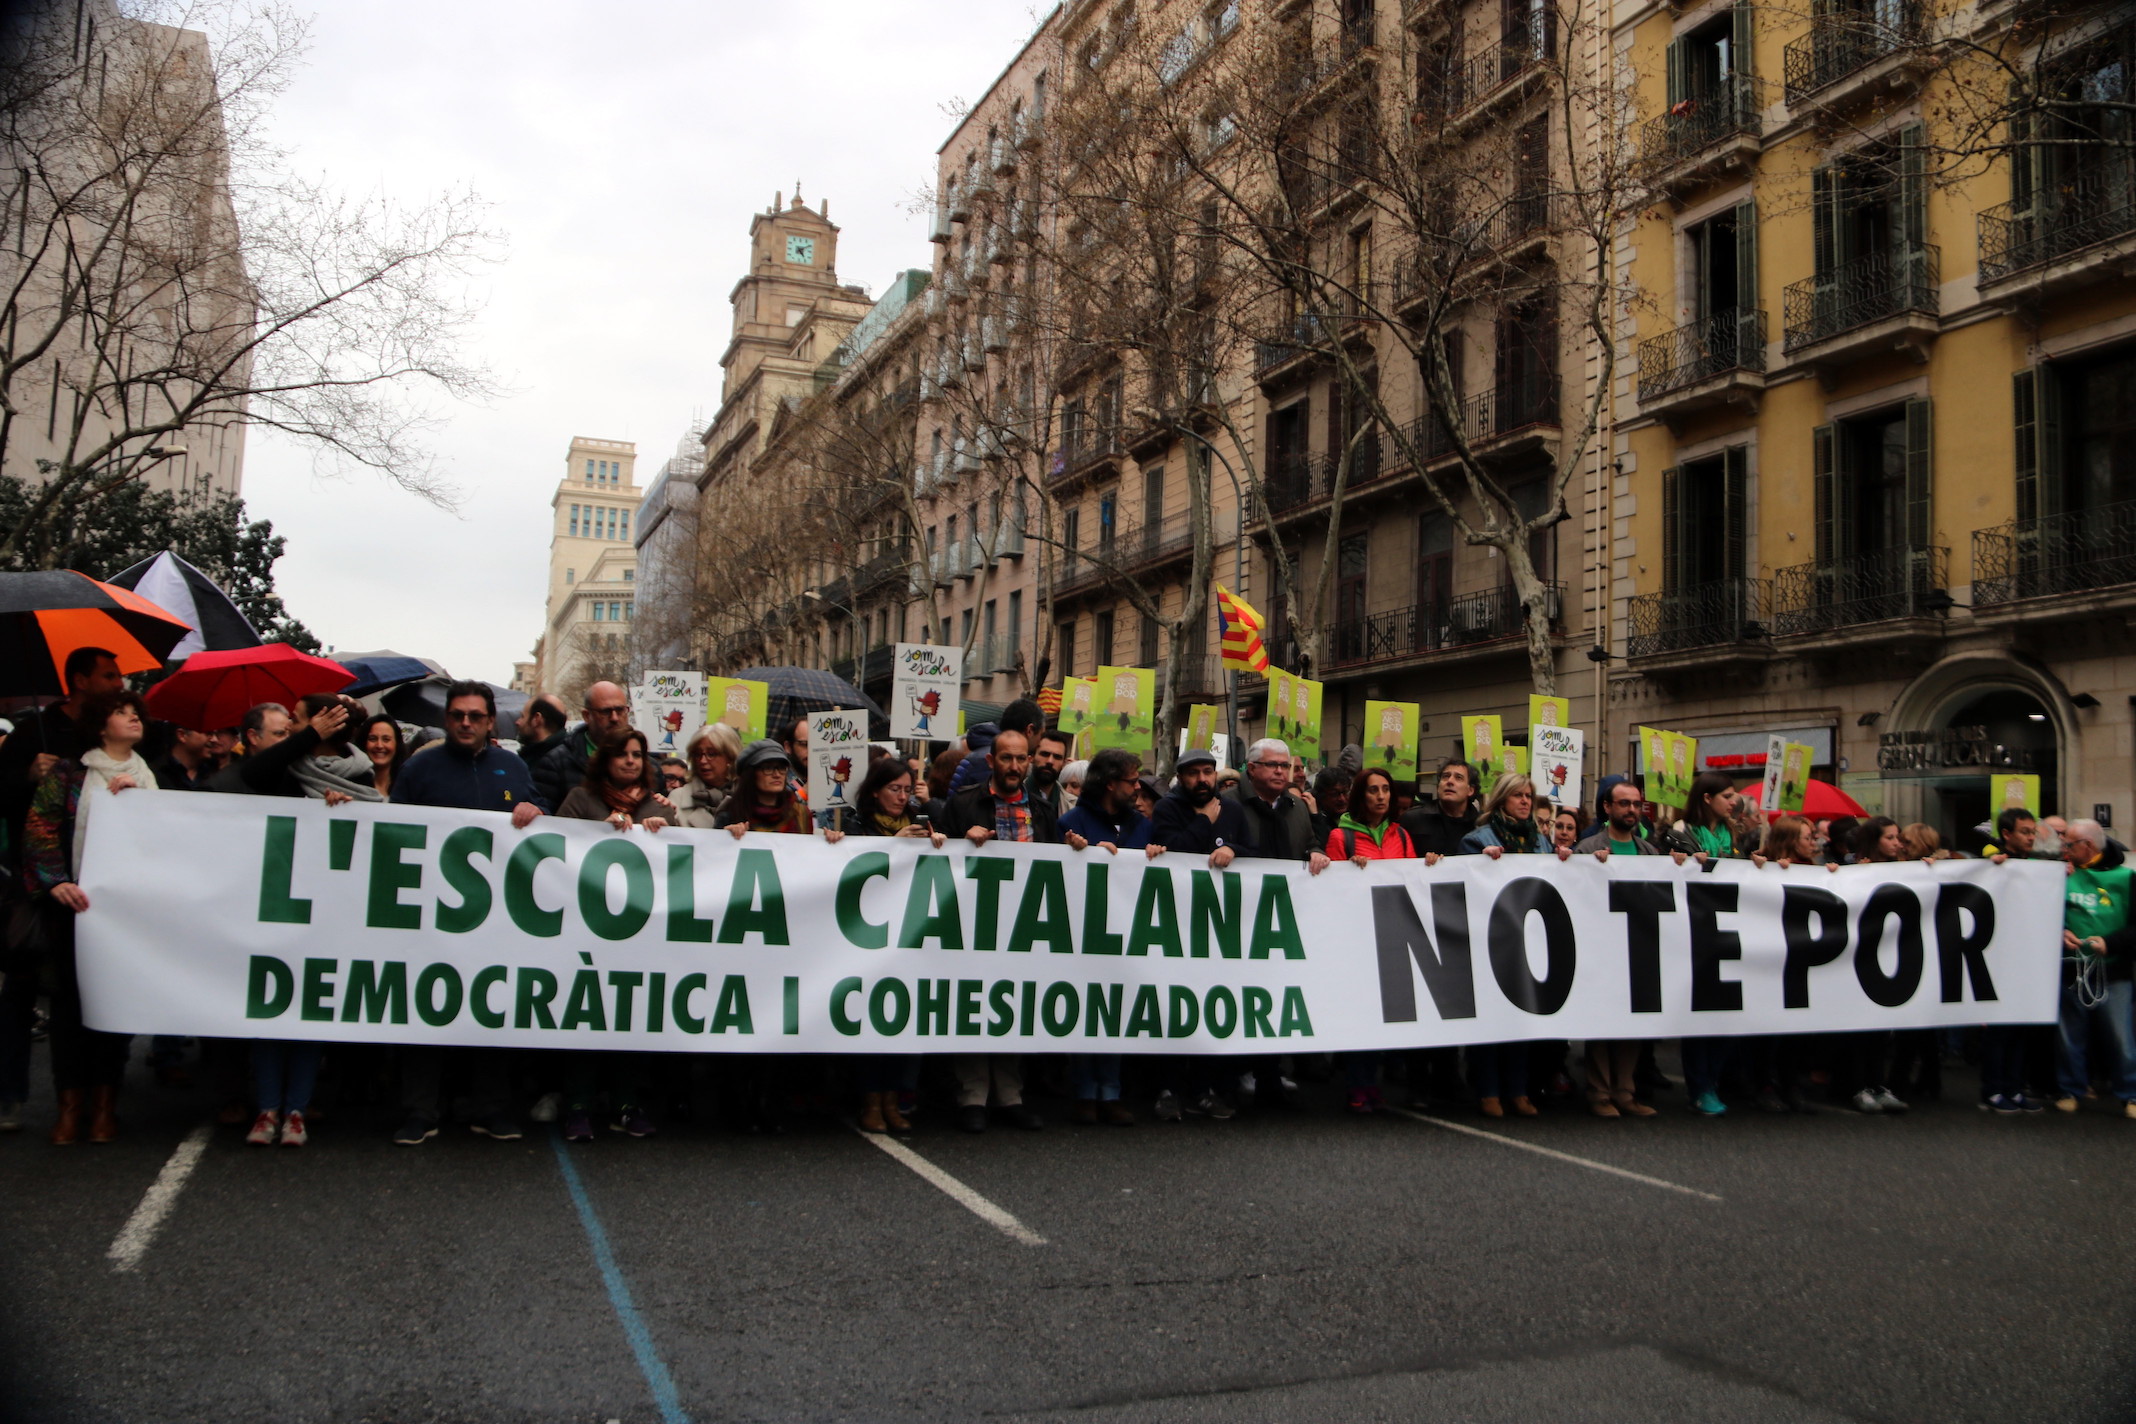 Imagen de la cabecera de la manifestación en defensa del modelo de la escuela catalana.